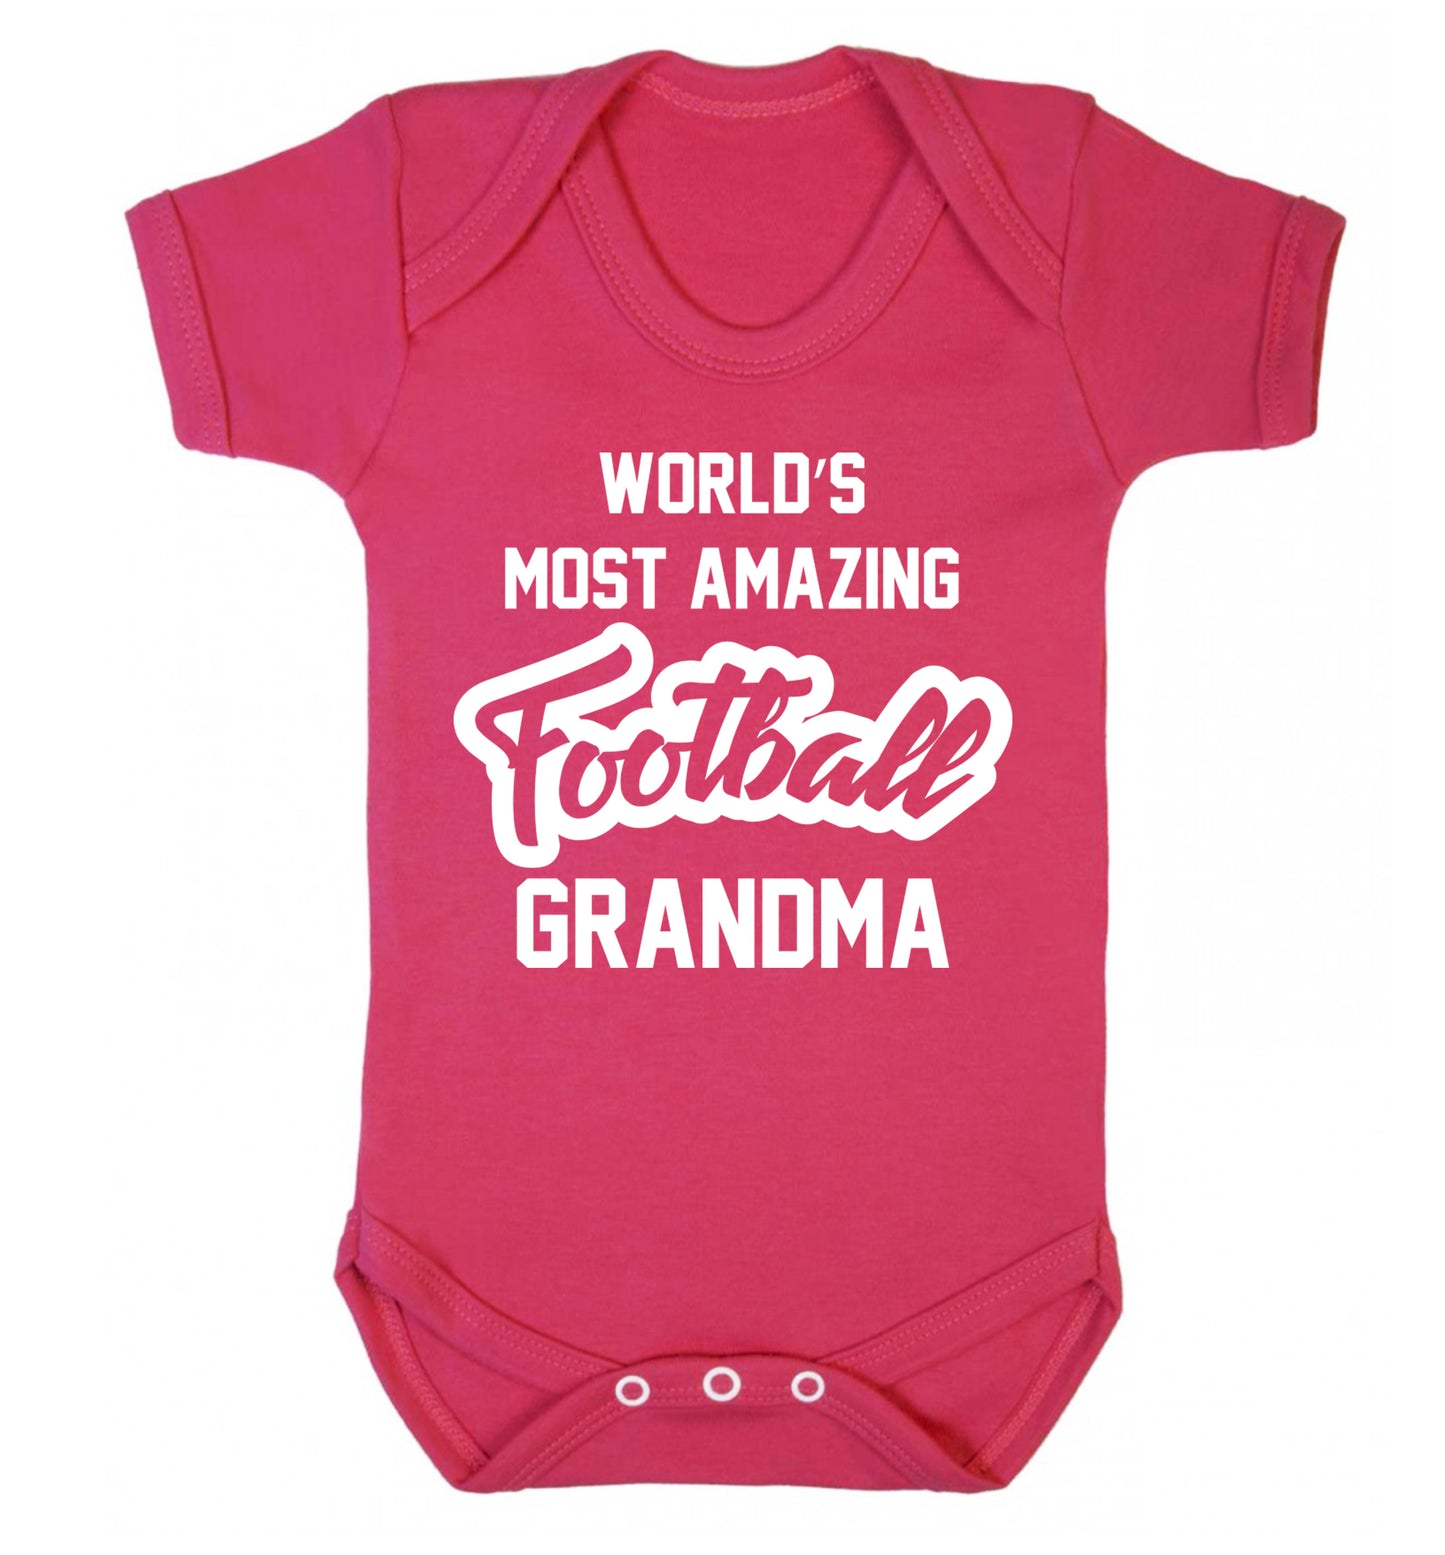 Worlds most amazing football grandma Baby Vest dark pink 18-24 months